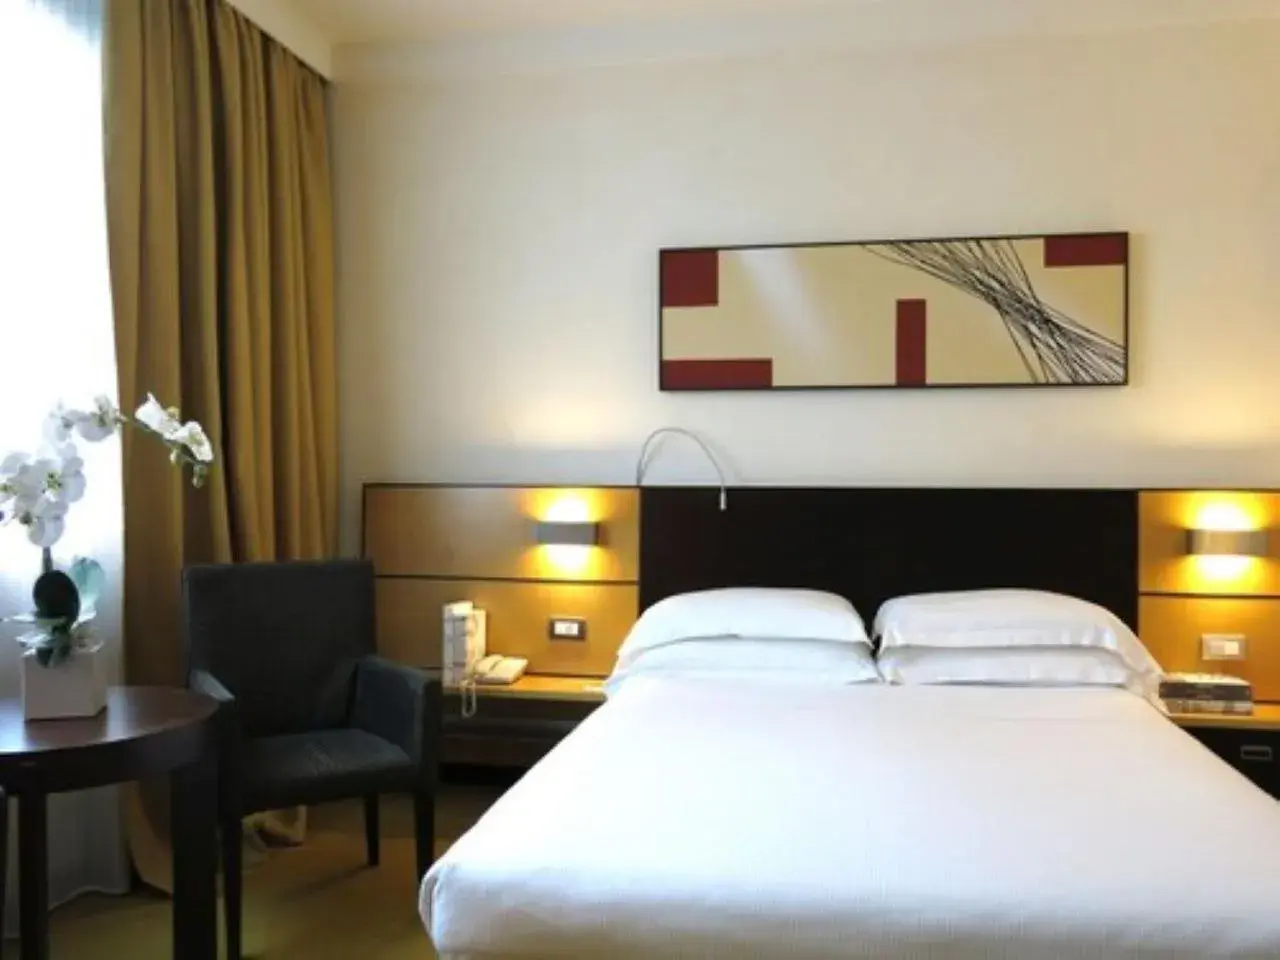 Bedroom, Bed in Best Western Plus Hotel Le Favaglie